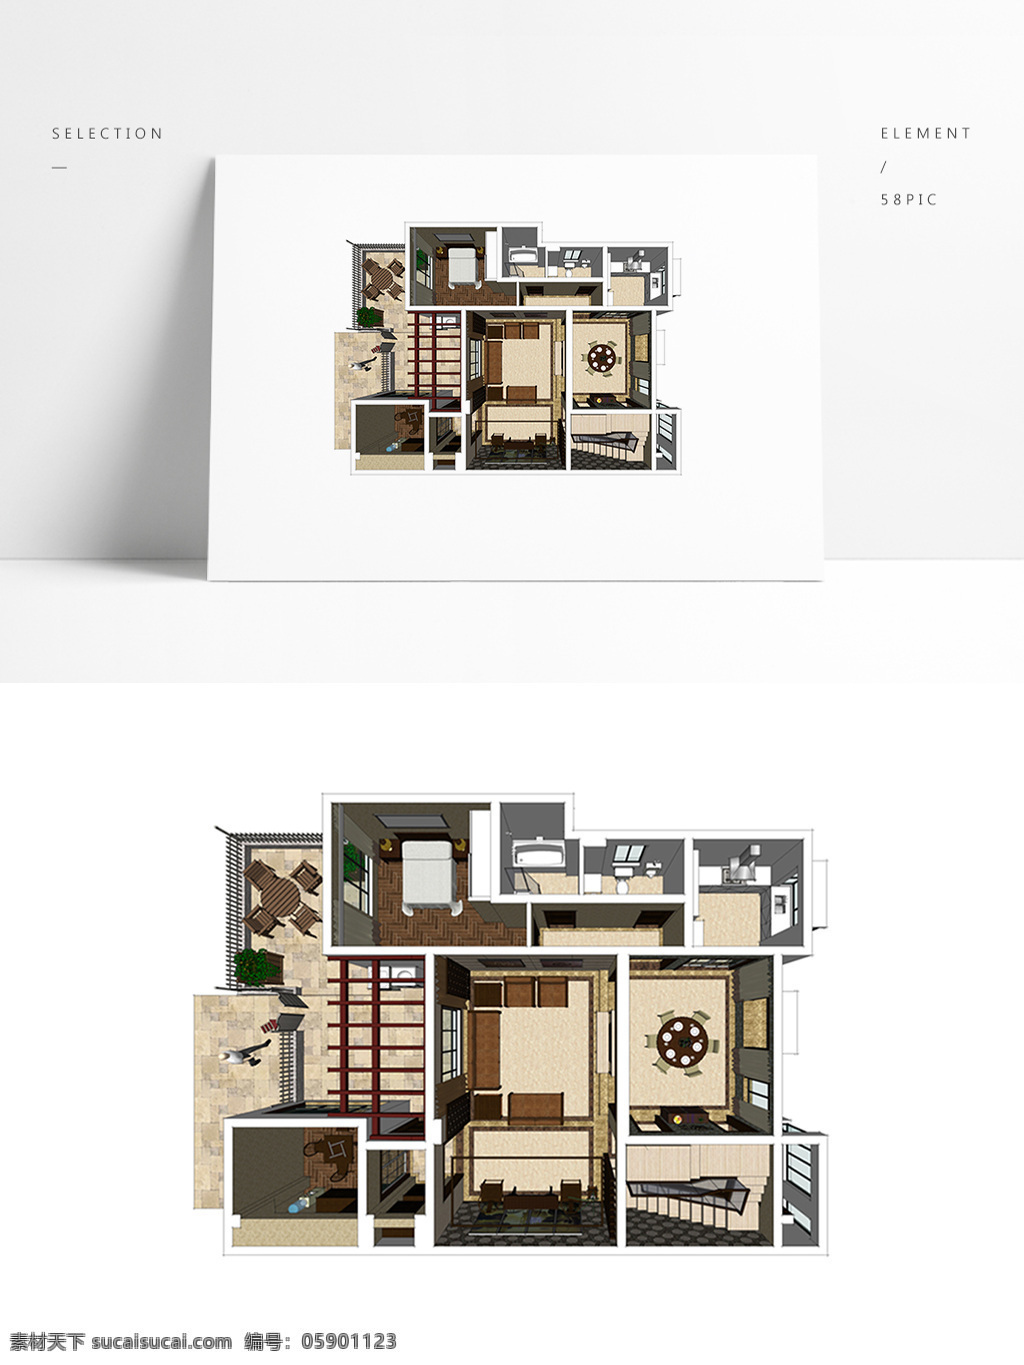 复式 别墅 户型 su 透视 模型 室内空间设计 住宅室内设计 样板房 3d模型 su模型 草图大师模型 家具模型